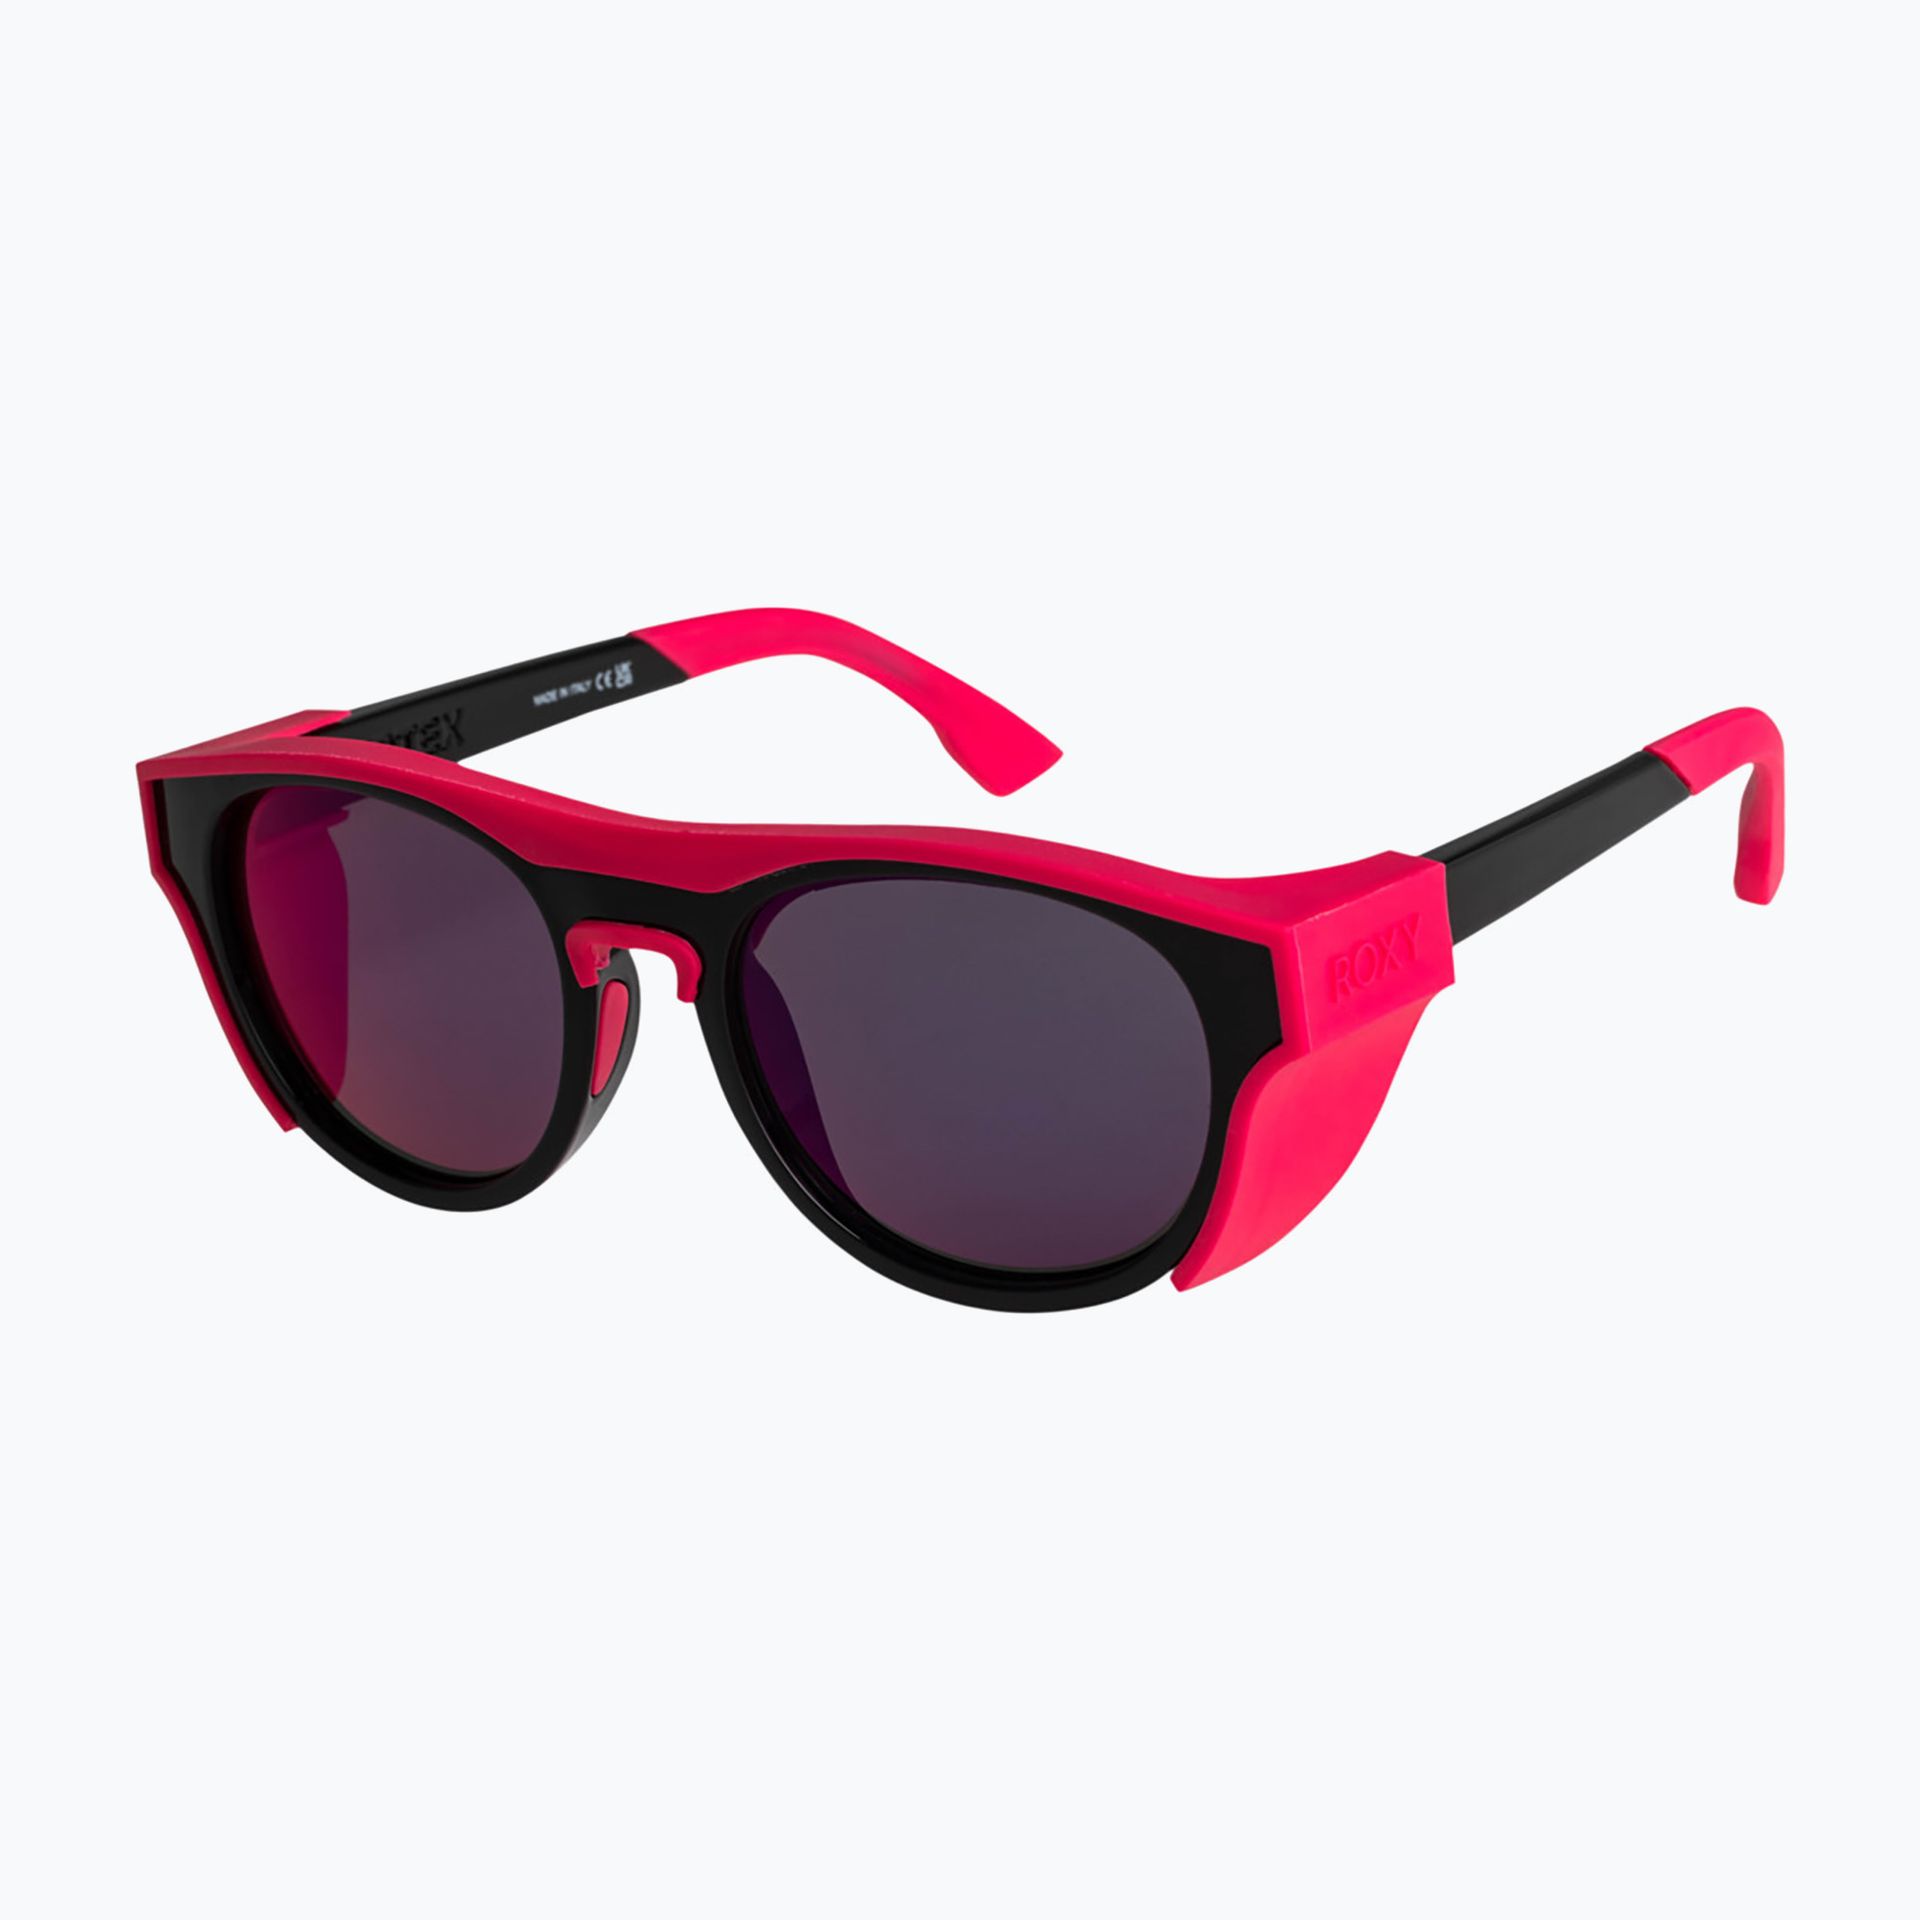 Okulary przeciwsłoneczne damskie ROXY Vertex black/ml red | WYSYŁKA W 24H | 30 DNI NA ZWROT